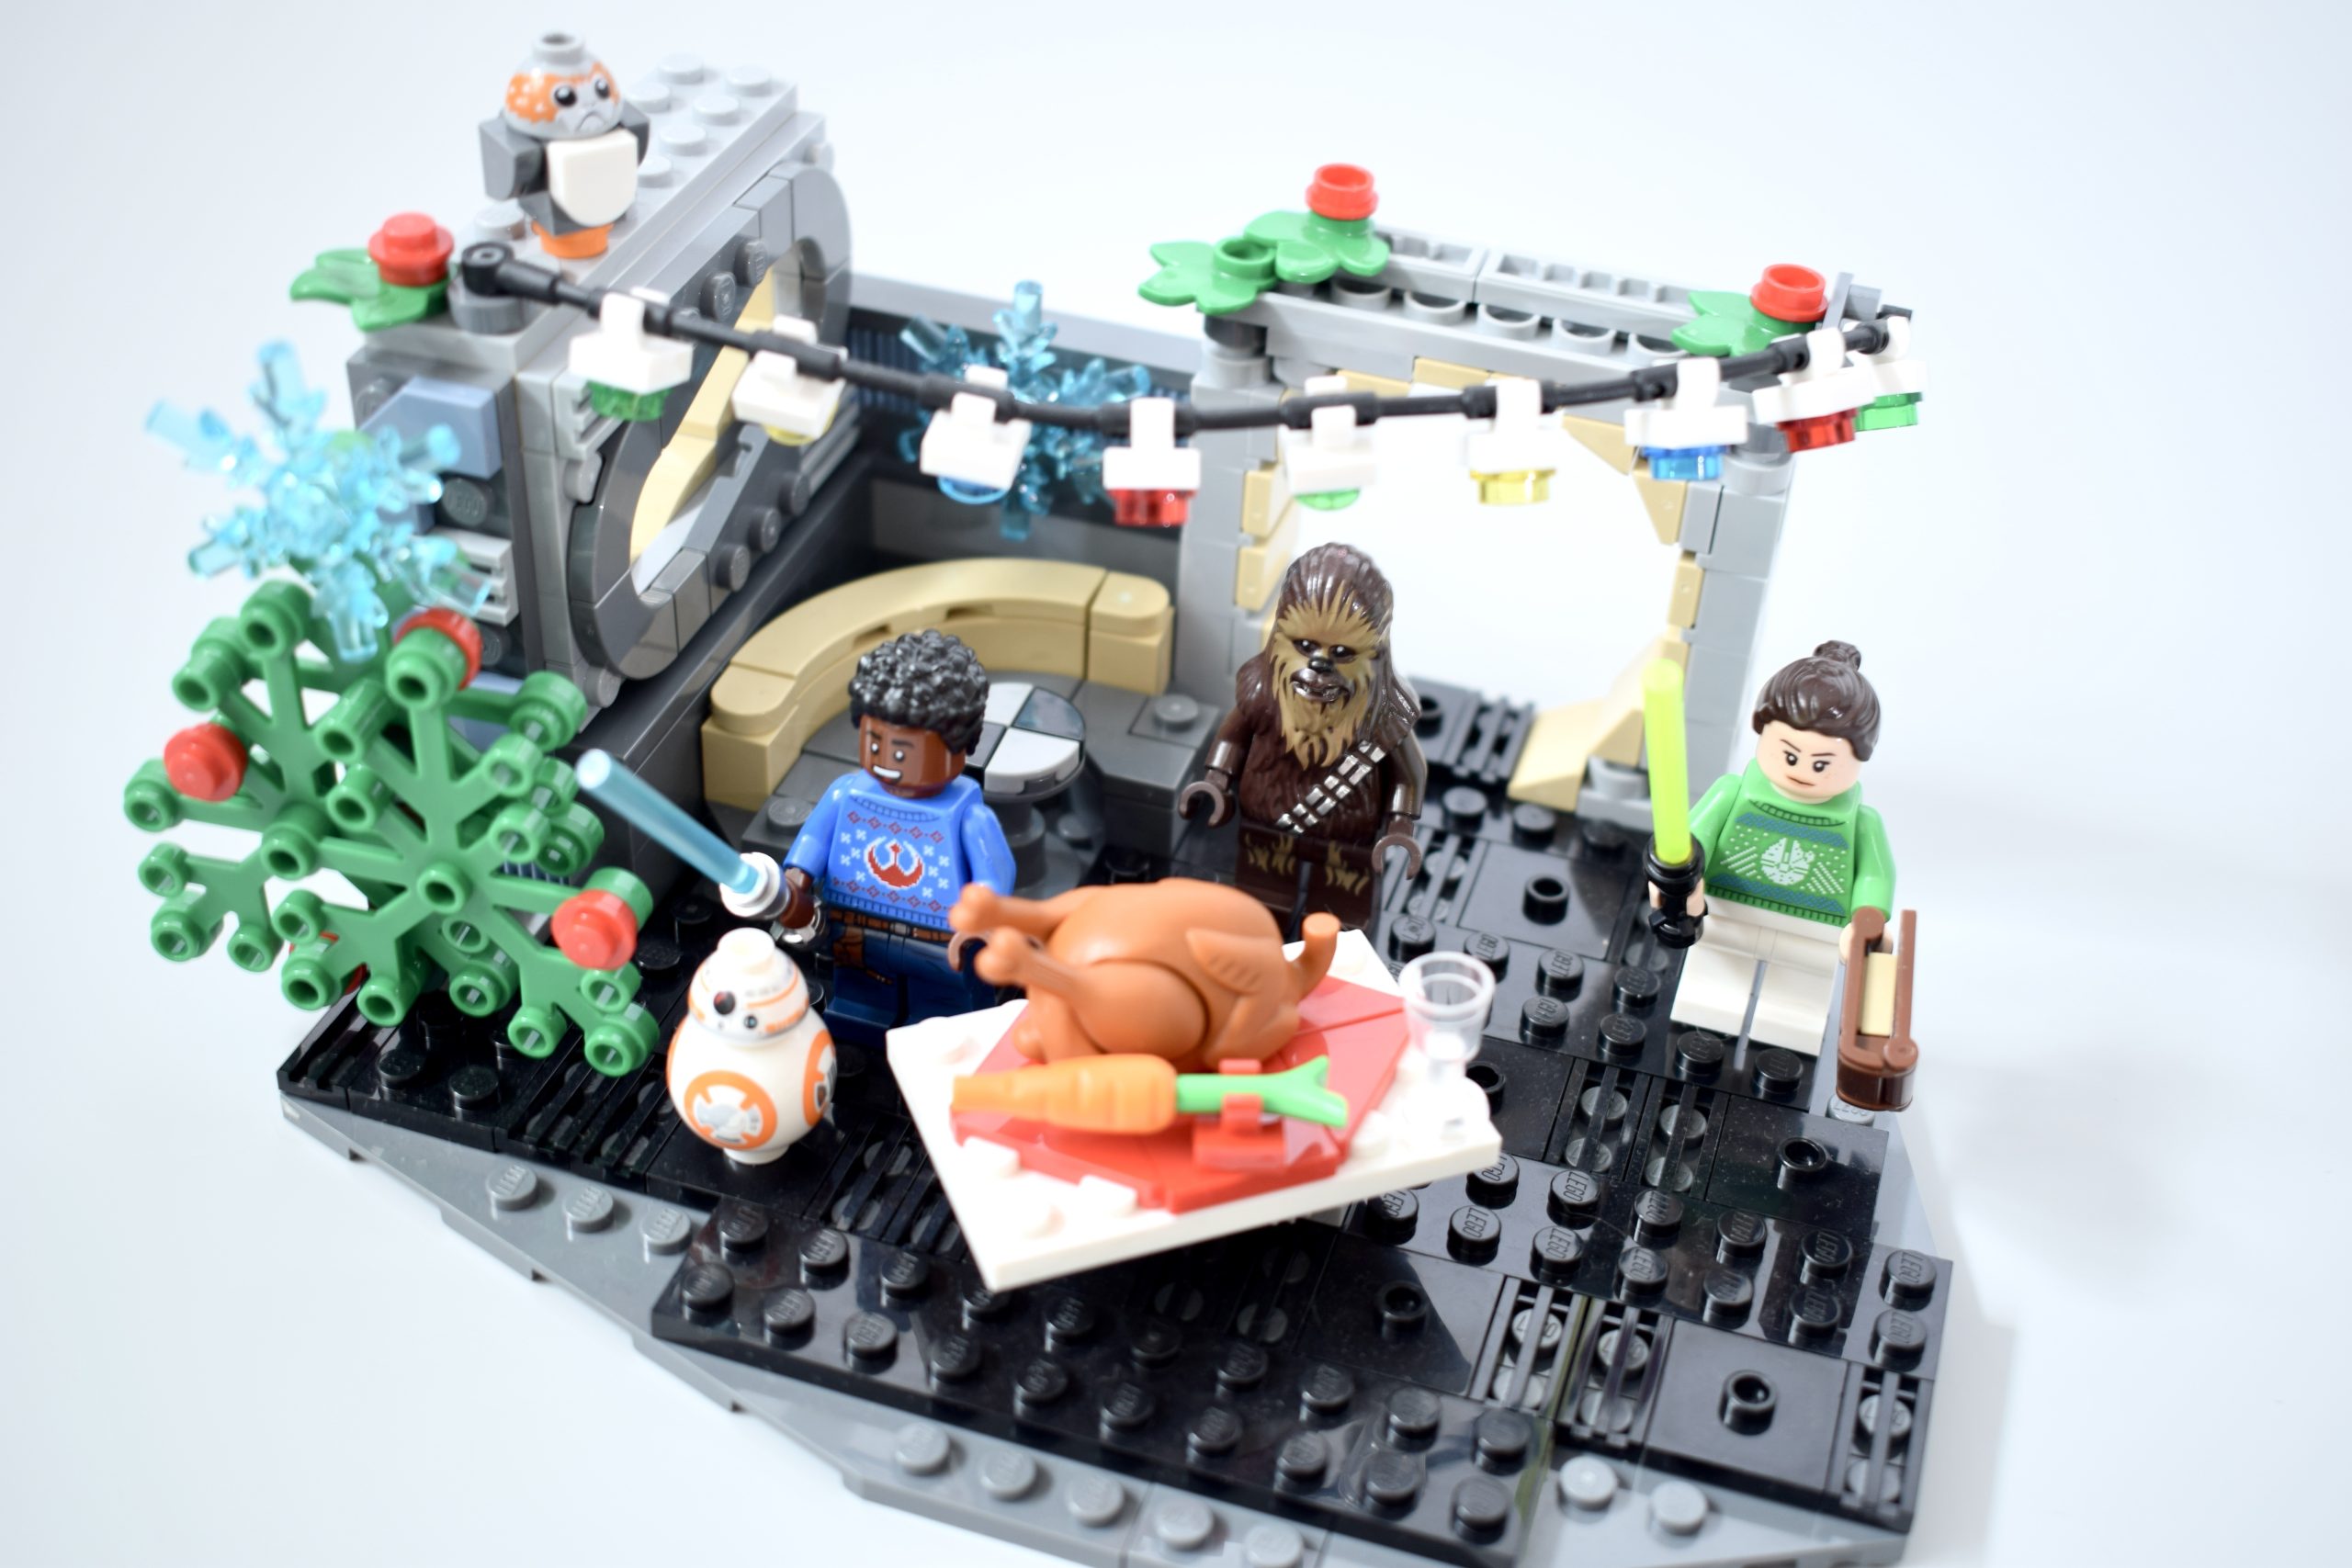 LEGO 40658 Star Wars Millennium Falcon Holiday Diorama 282pcs